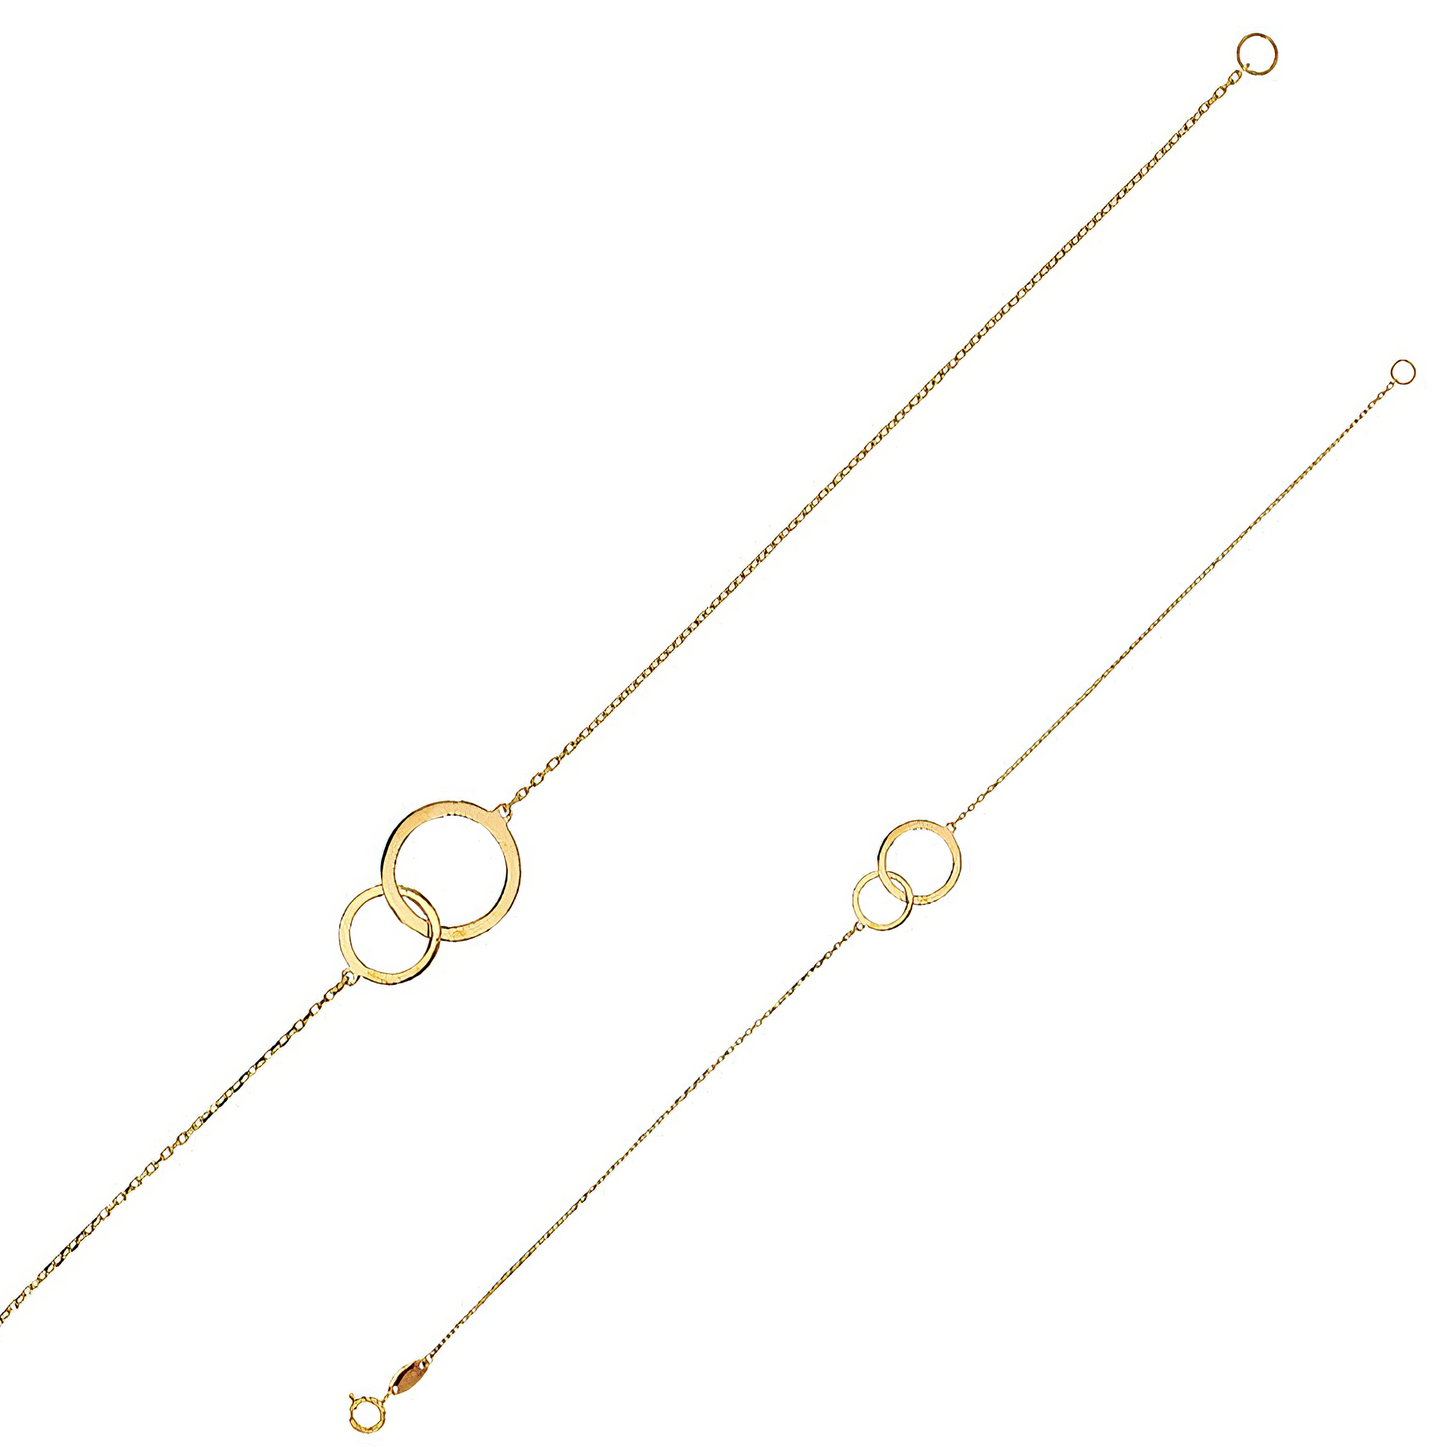 Interlocking circles bracelet in 9 carat gold